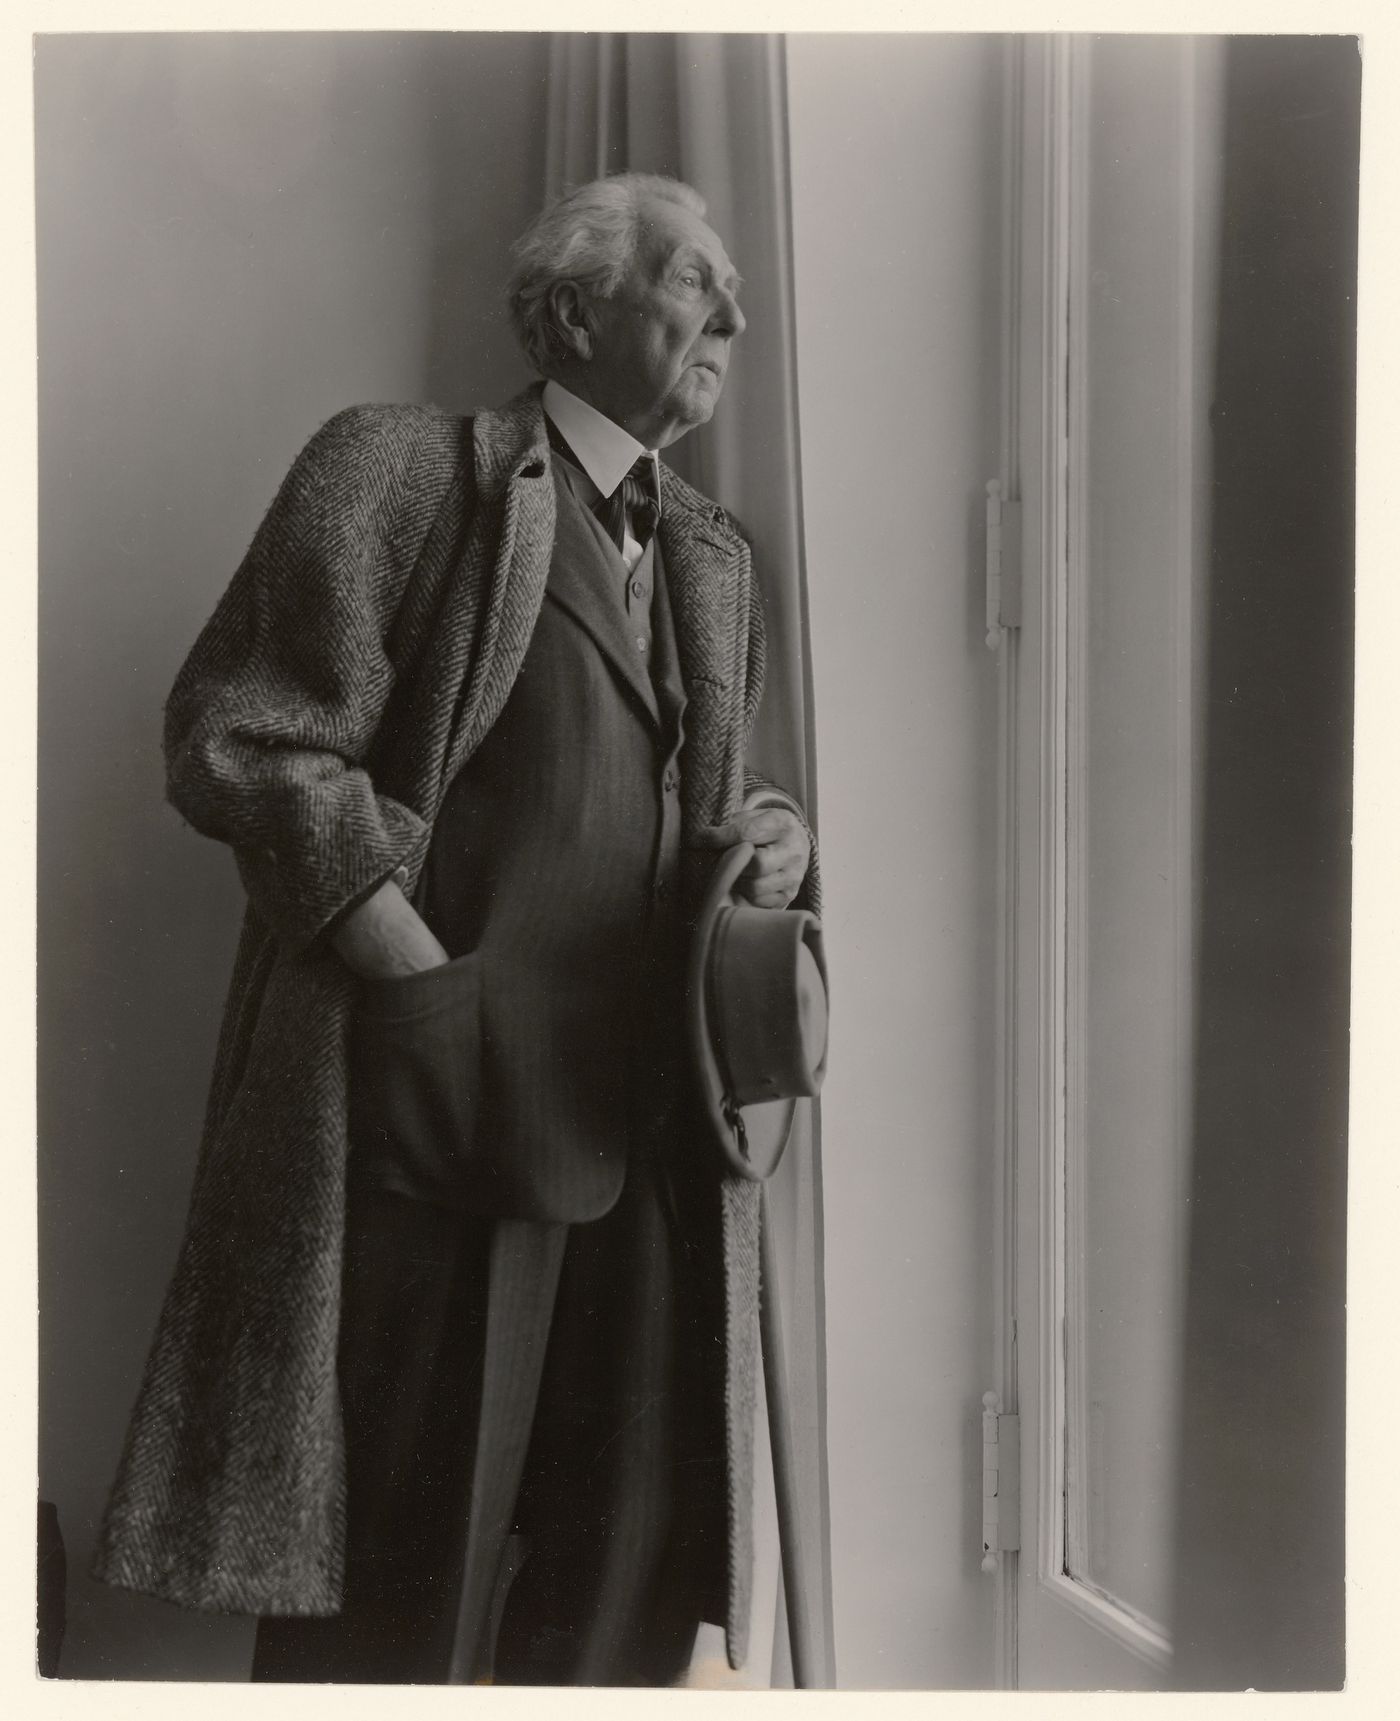 Portrait of Frank Lloyd Wright at a window